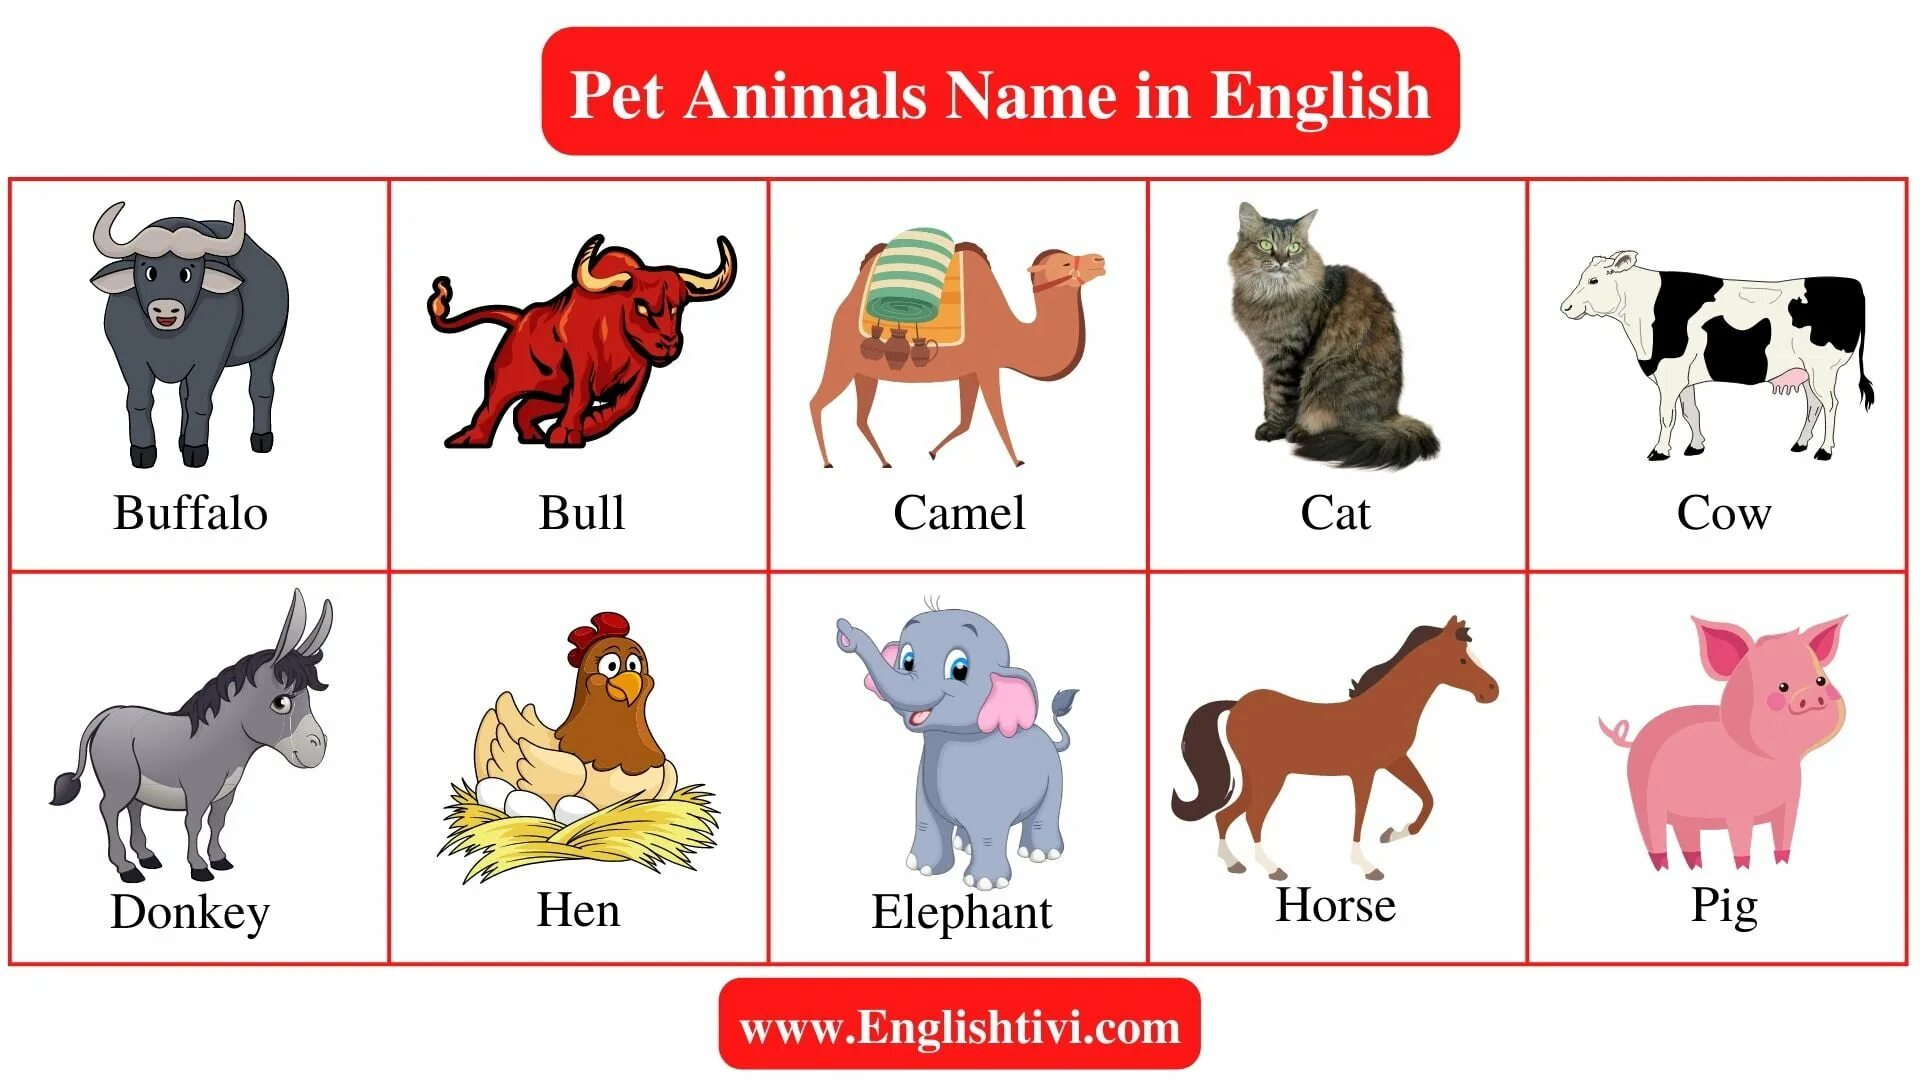 Name 5 pets